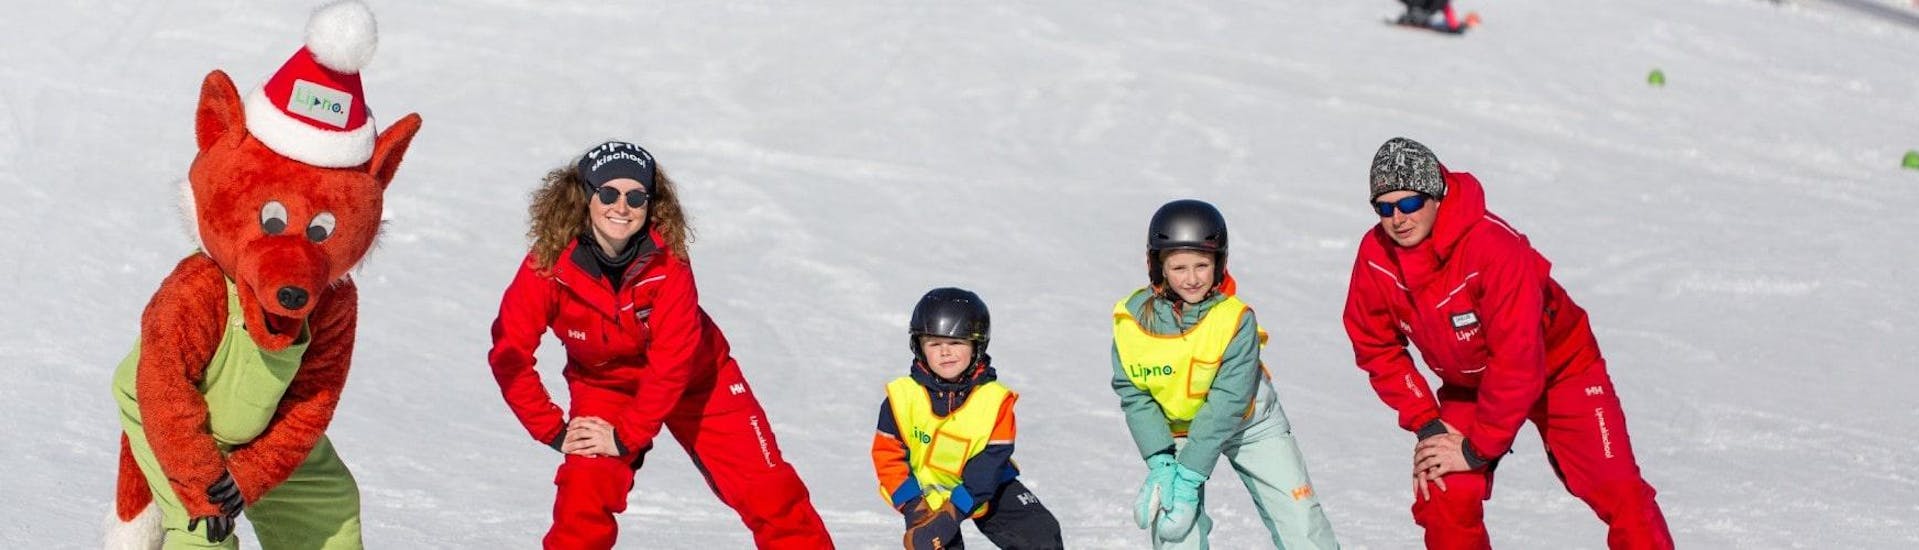 Cours de ski Enfants dès 4 ans pour Tous niveaux.